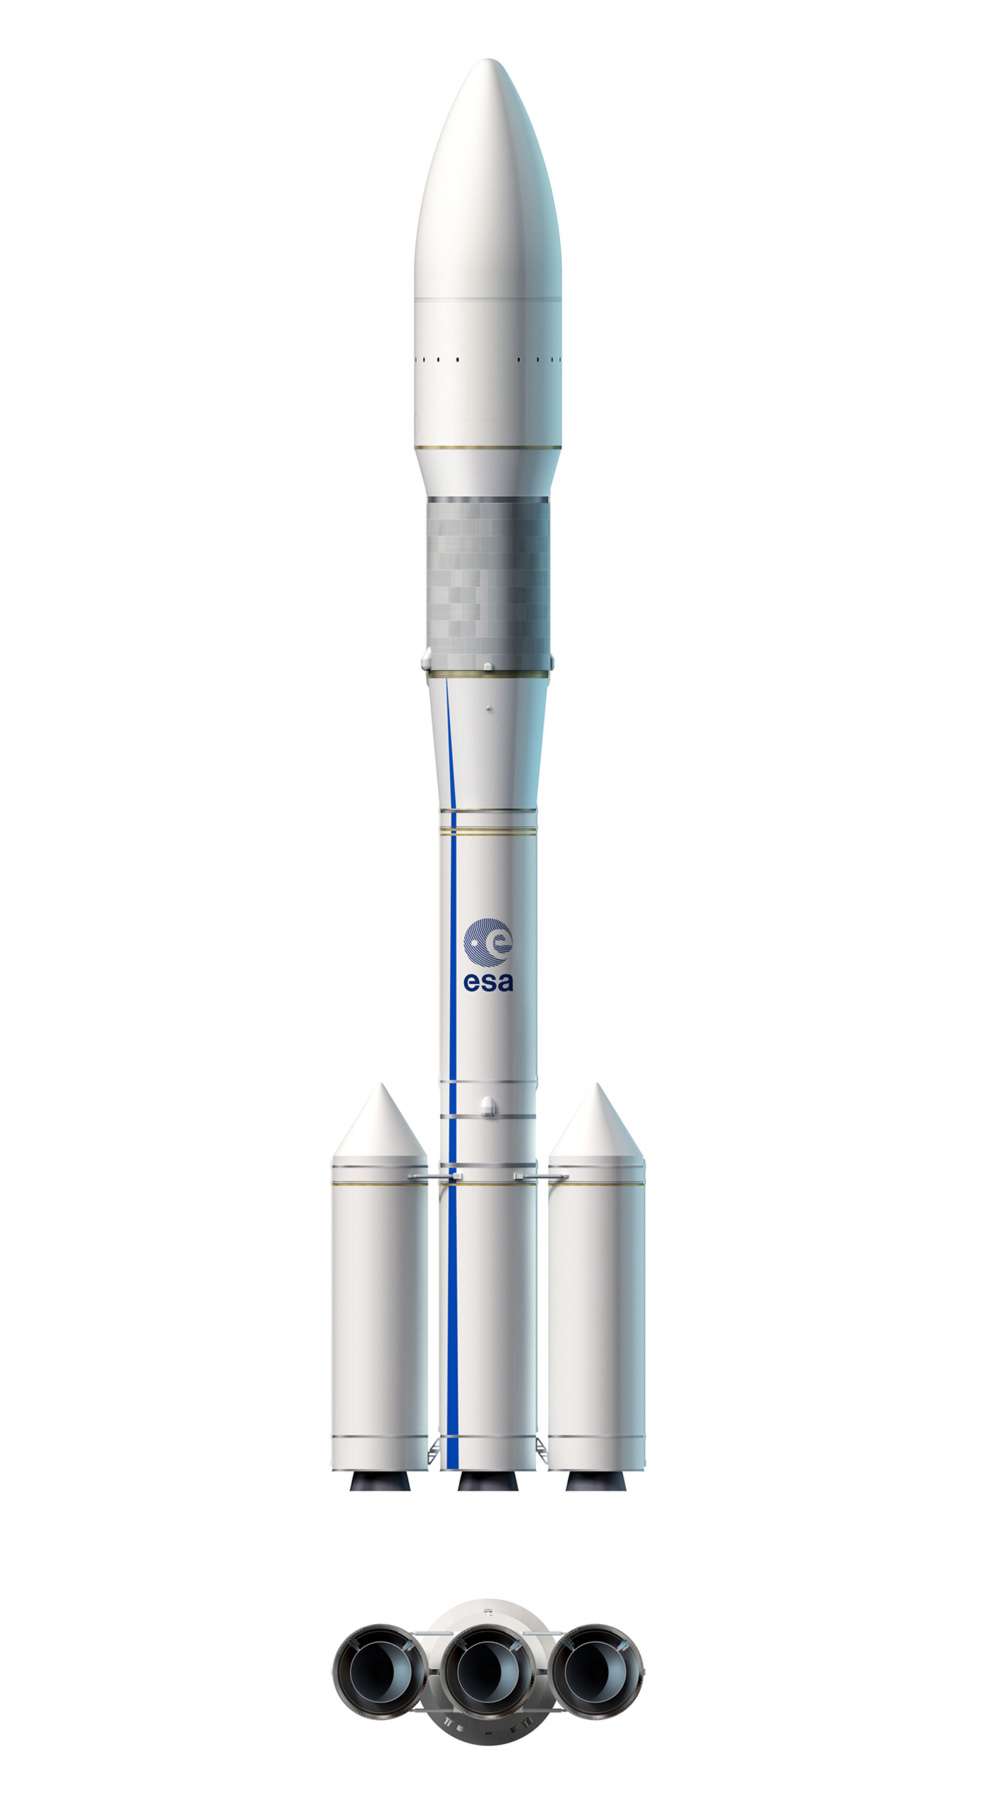 Le concept définitif d’Ariane 6 : le premier étage est formé par trois propulseurs à propergol solide installés en ligne. Un unique propulseur, de même type, constitue le deuxième étage (là où se trouve le logo de l'Esa sur ce dessin). Le troisième étage est, lui, à propulsion cryotechnique. © D. Ducros, Esa